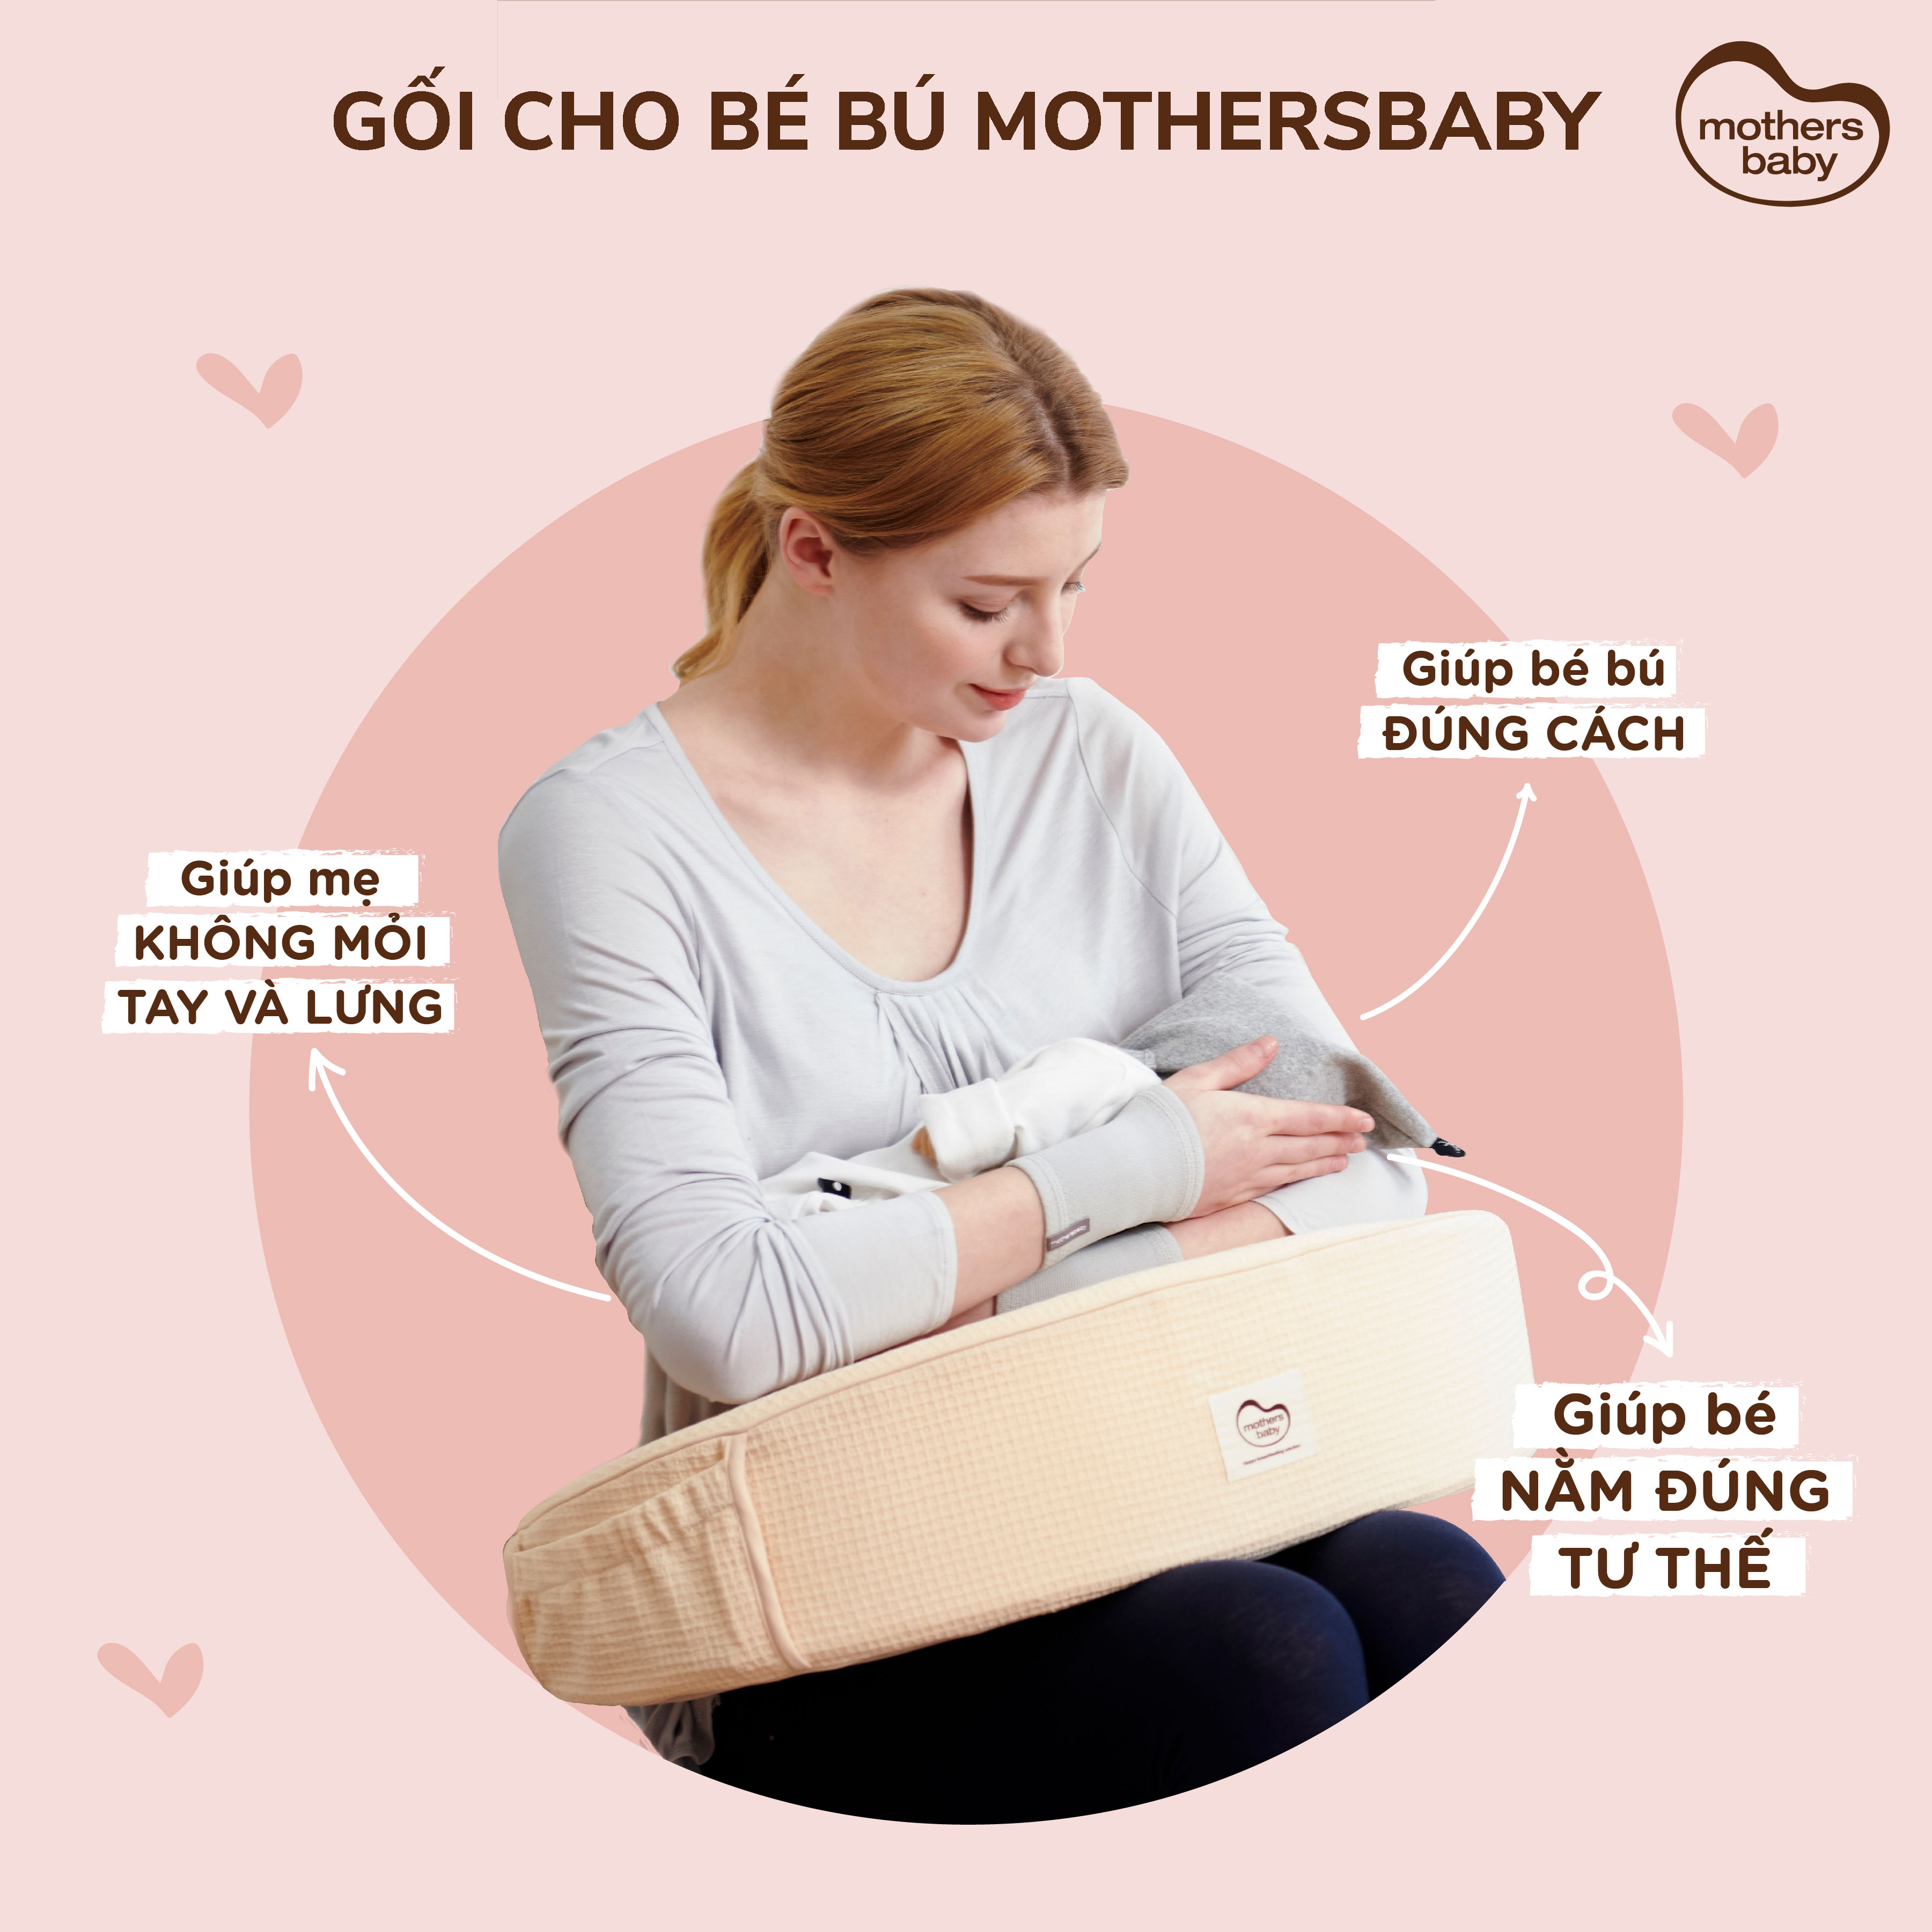 Gối Cho Bé Bú - Gối Chống Trào Ngược Thương Hiệu Mothersbaby Hàn Quốc